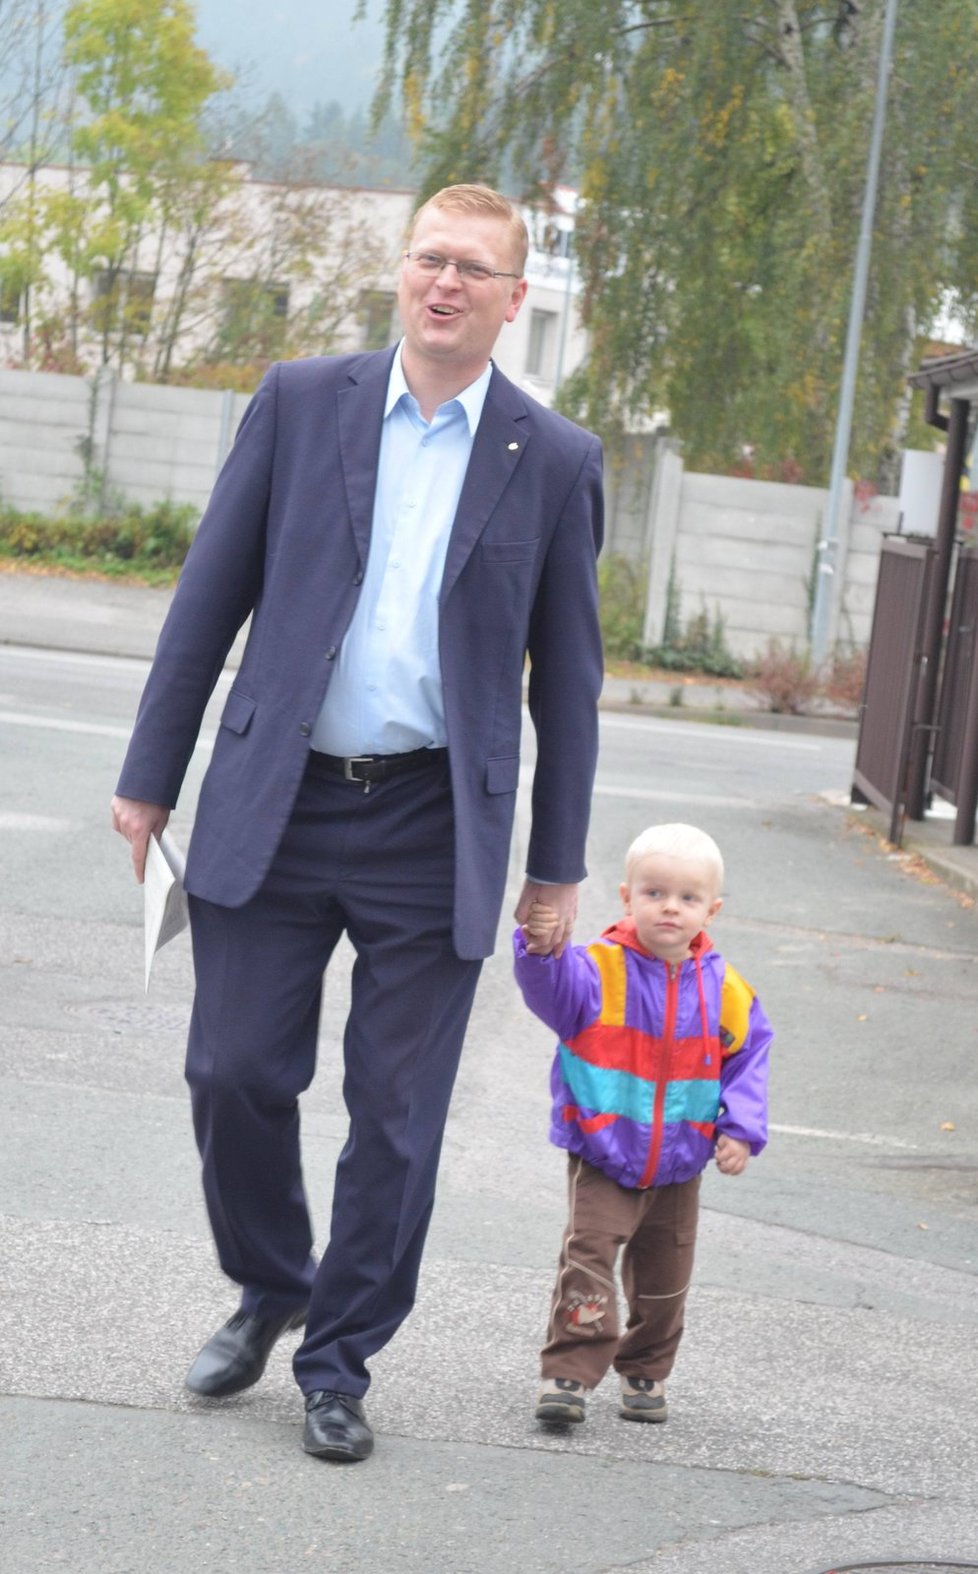 Volby 2014: Pavel Bělobrádek (KDU-ČSL) vyrazil do volební místnosti v Náchodě se synem Josífkem